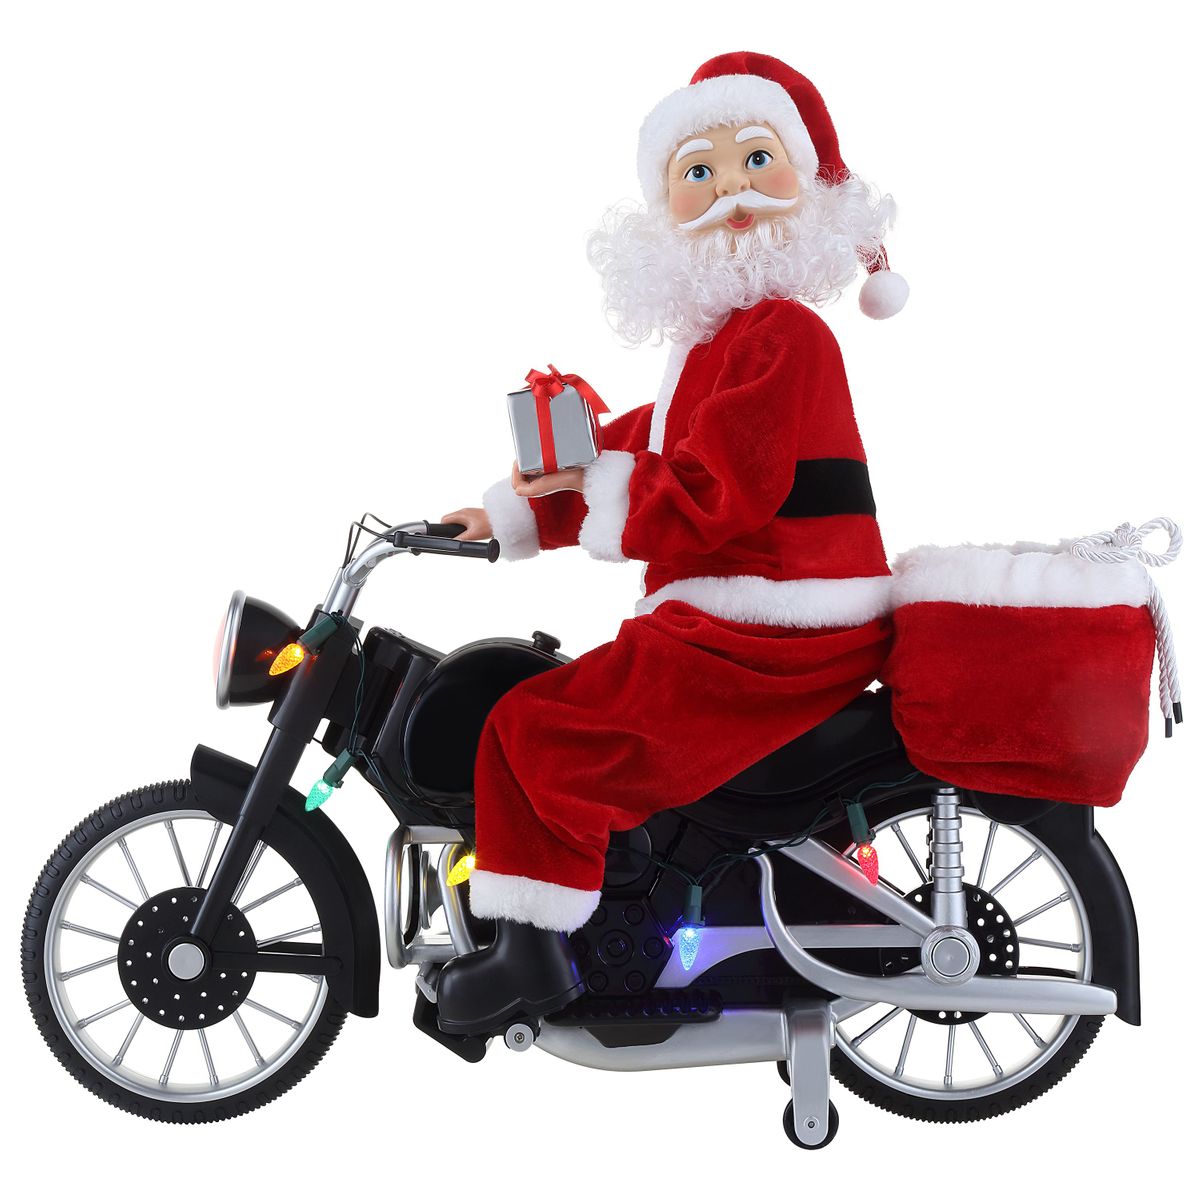 新品、本物、当店在庫だから安心】 Walmart ウォルマート アメリカ 米国ウォルマート  米国最大規模スーパーマーケットWalmart市場店取扱い希望商品のご意見受付中 送料無料 Mr. Christmas Motorcycling  Plush Santa 20